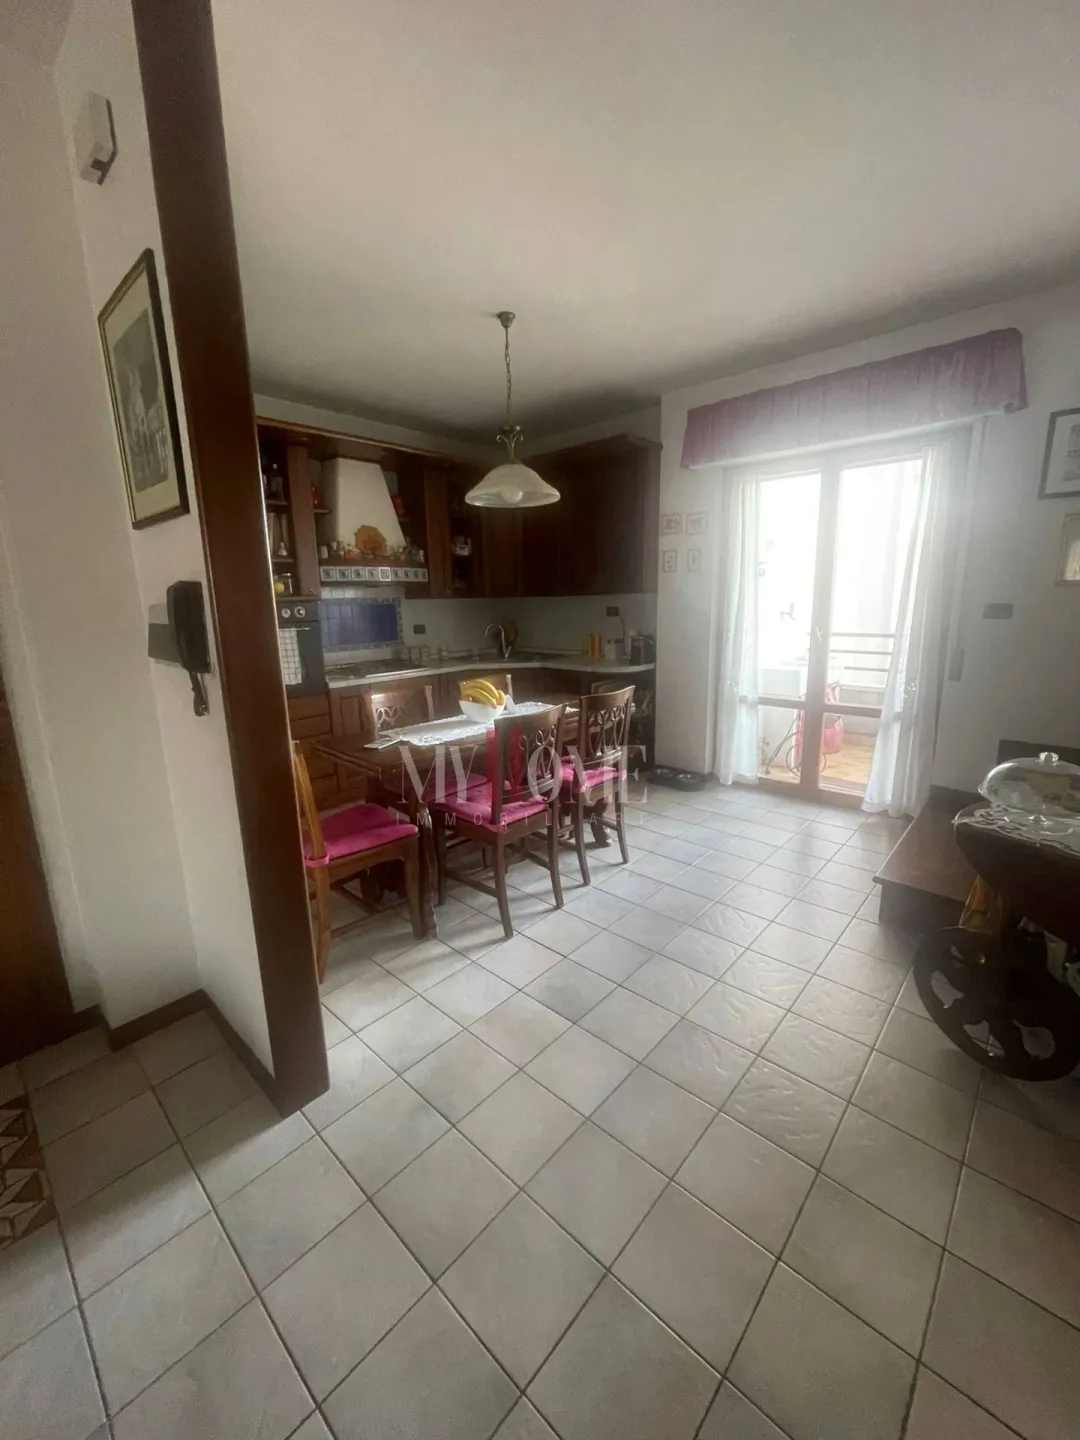 Immagine per Appartamento in vendita a Folignano